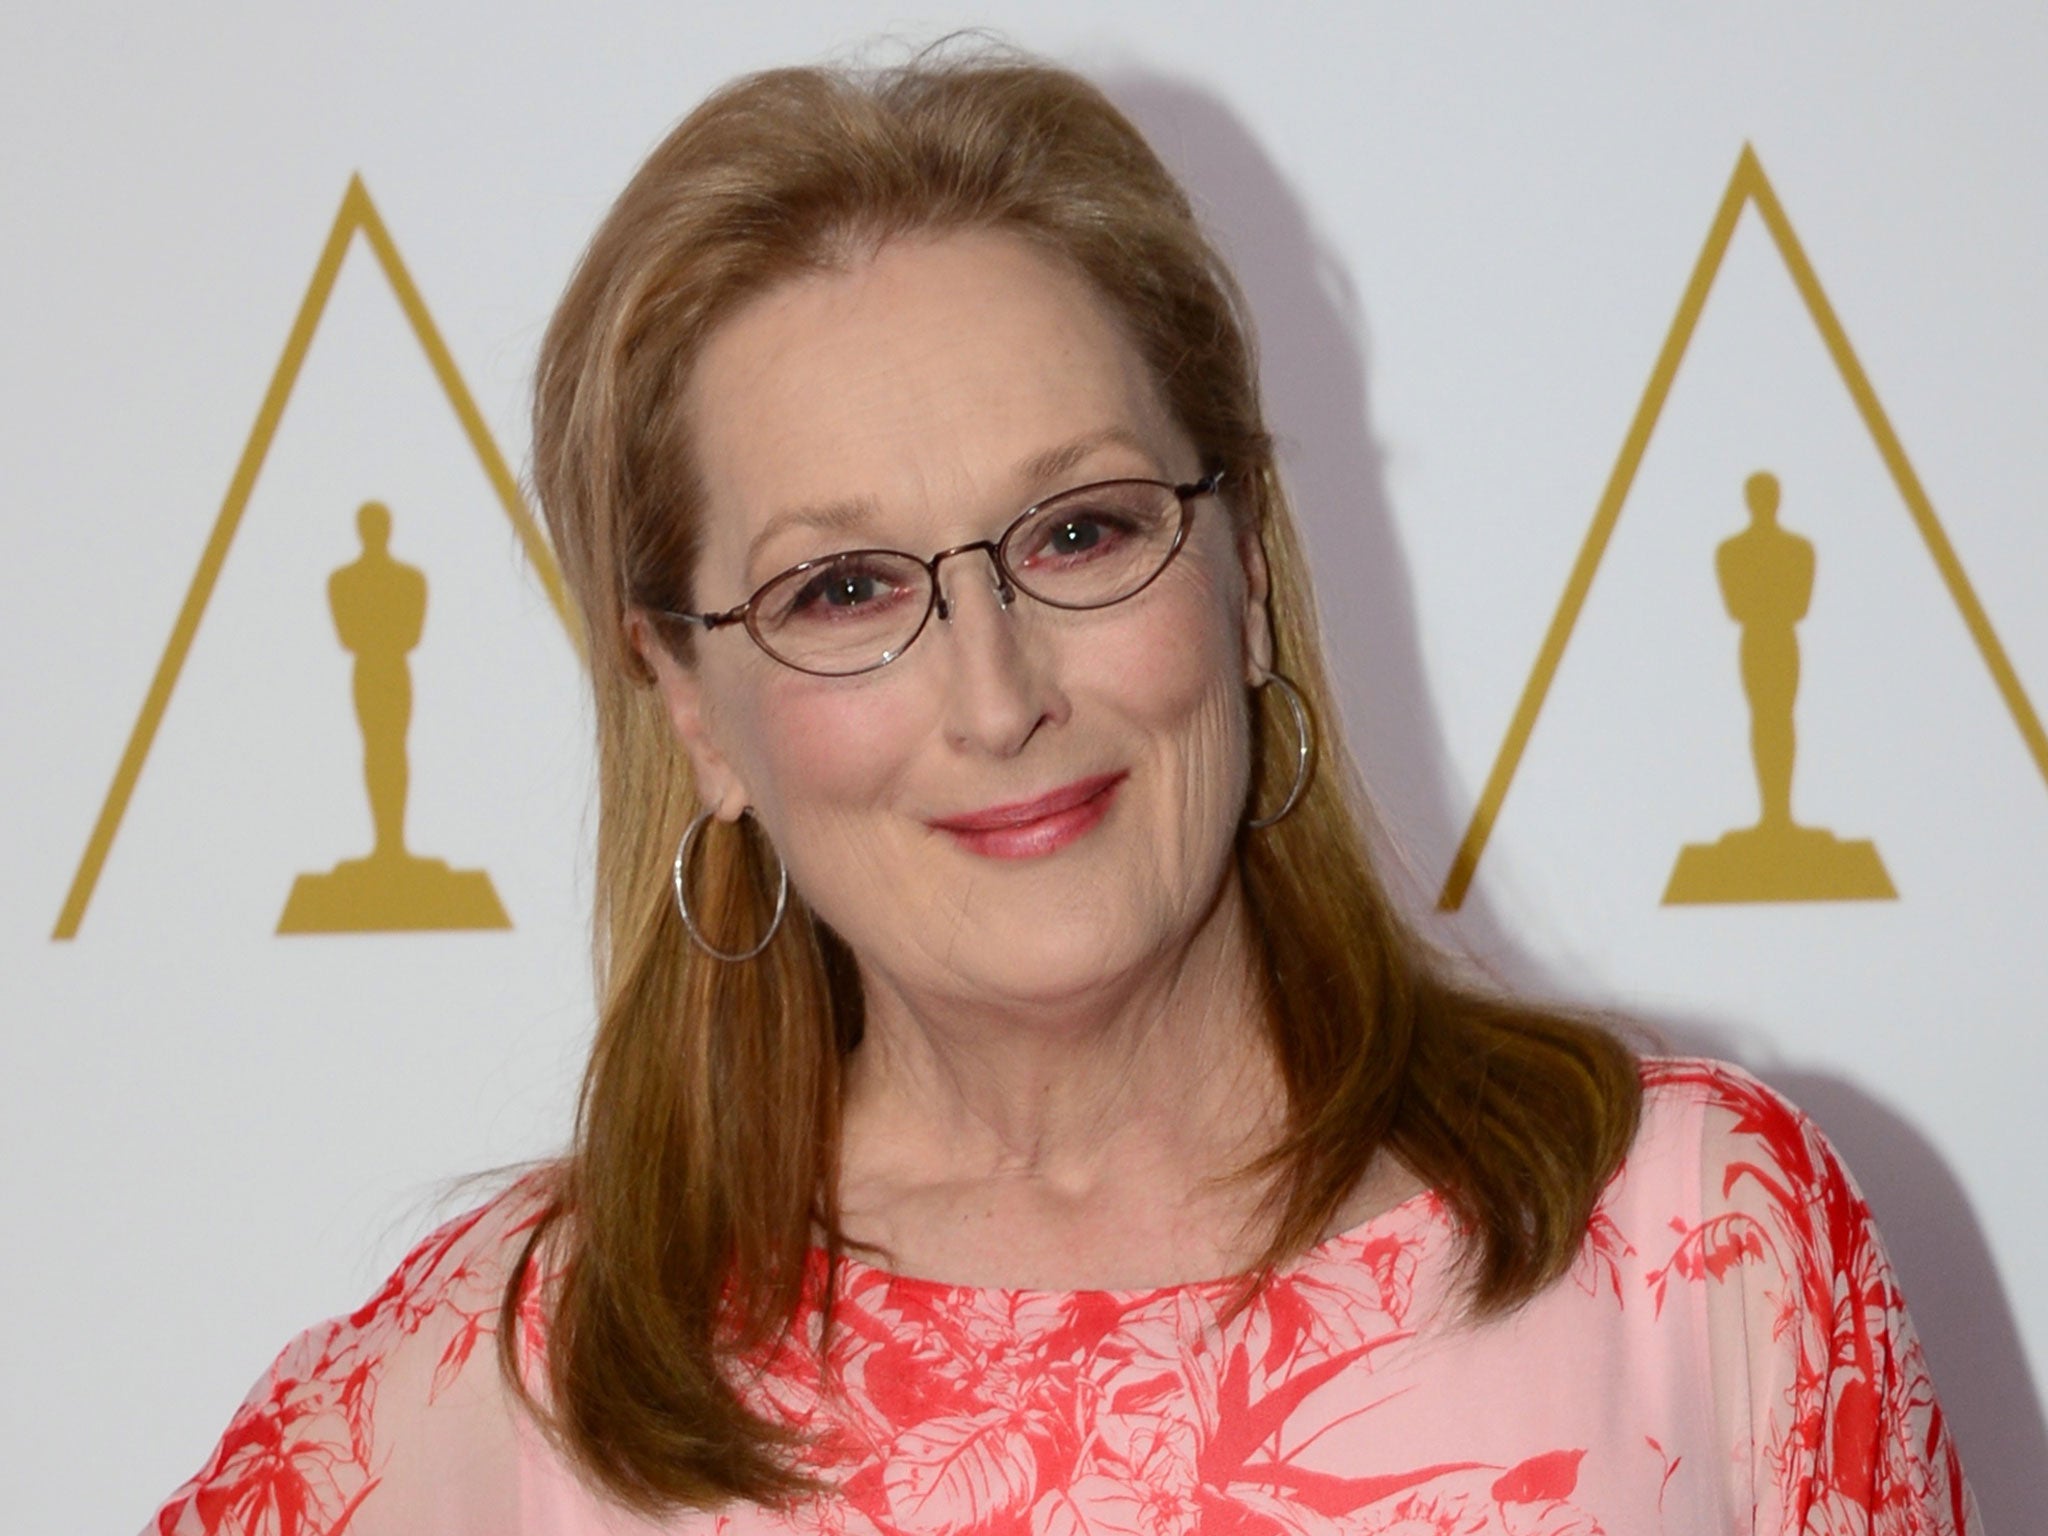 Meryl Streep, actress